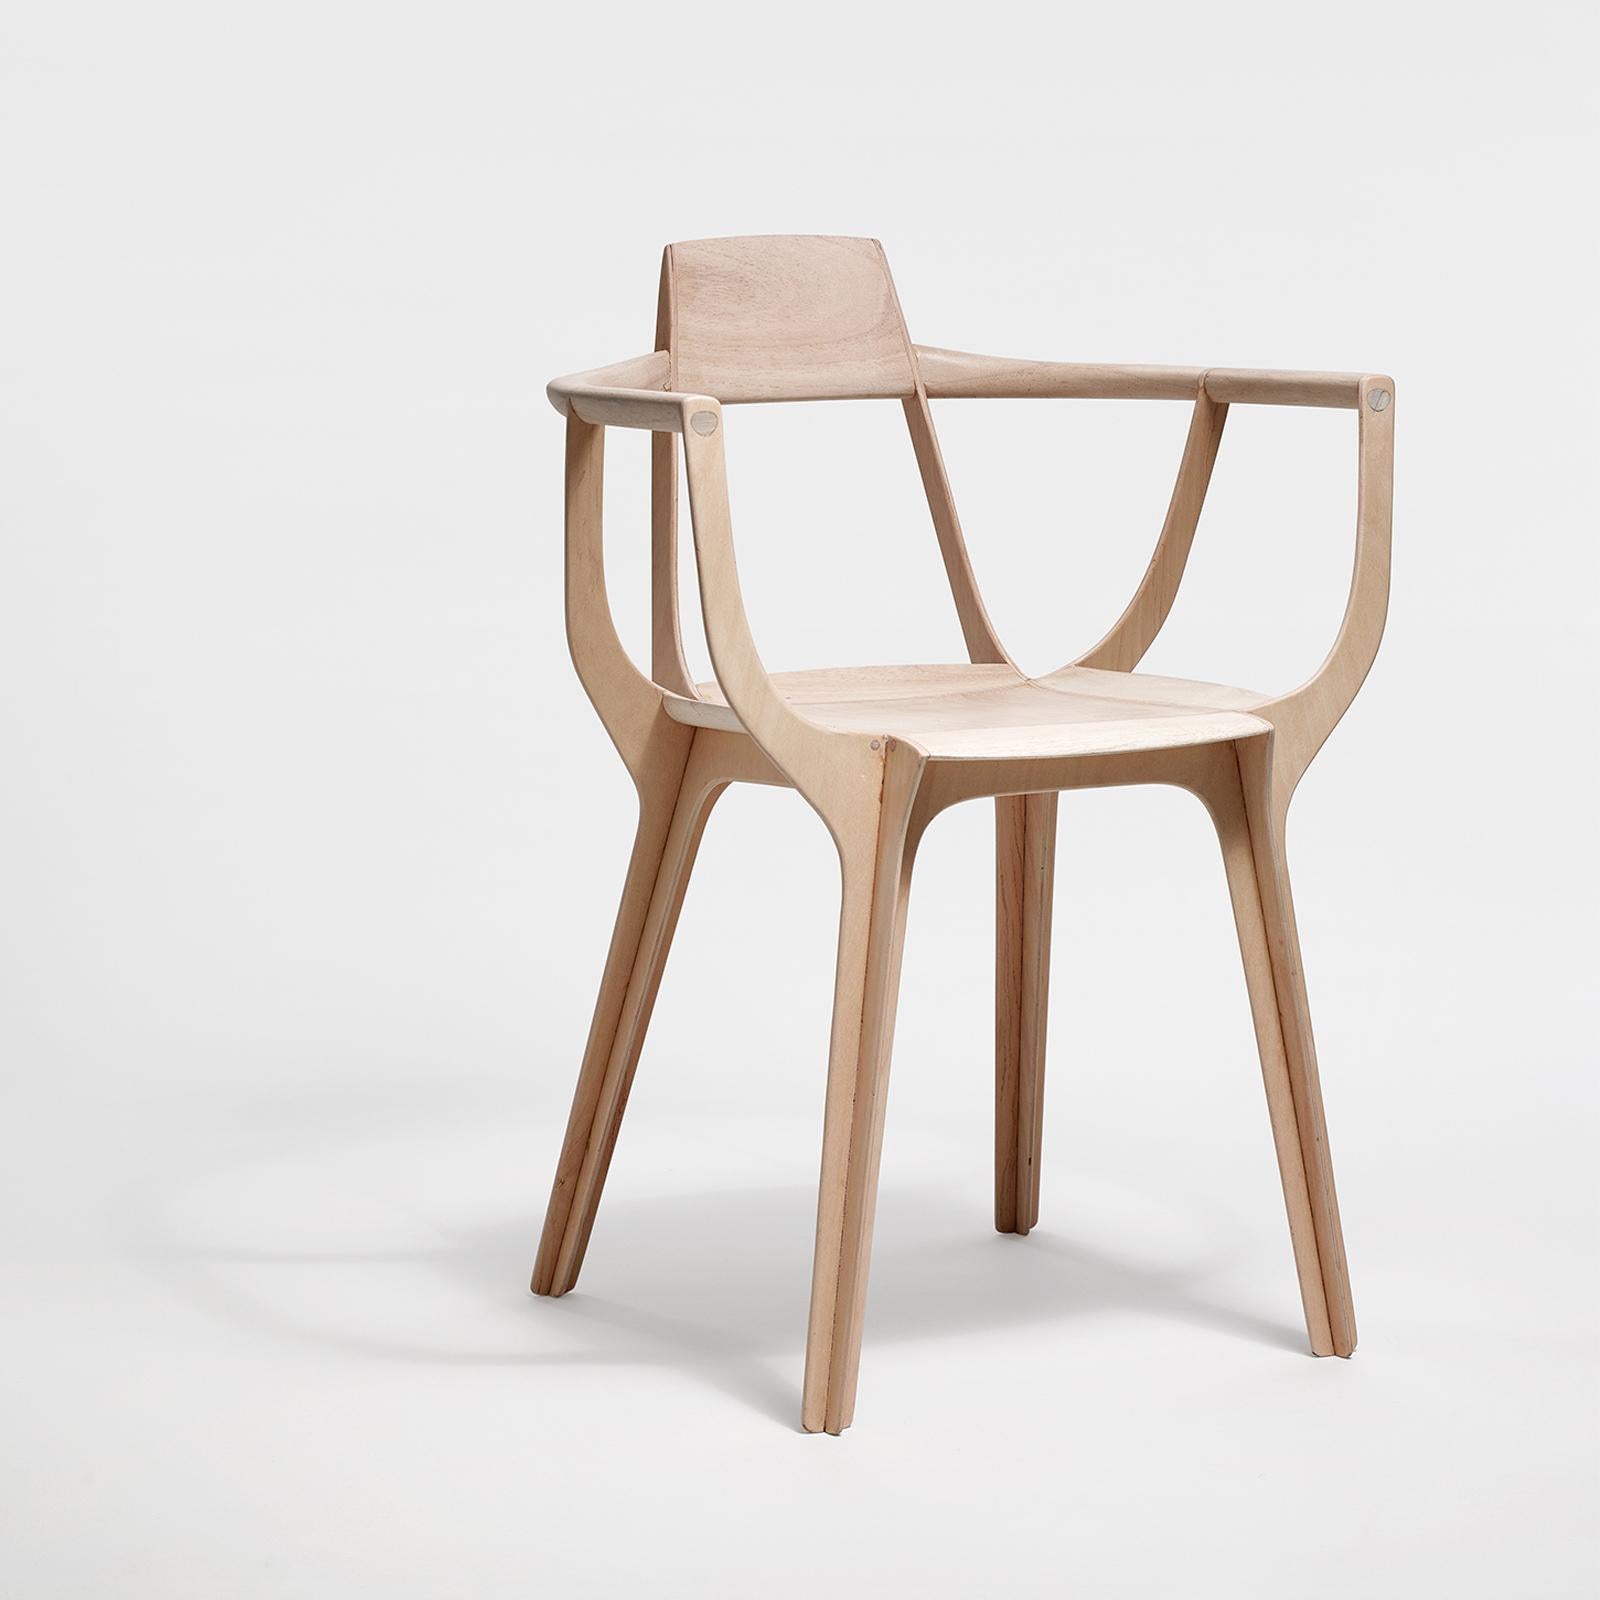 Eutopia a une structure sophistiquée : ce fauteuil est composé de quatre pièces de bois multi-lamelles qui se croisent puis se séparent à nouveau dans l'assise, permettant à différents plans de travailler dans leur propre direction avec force pour